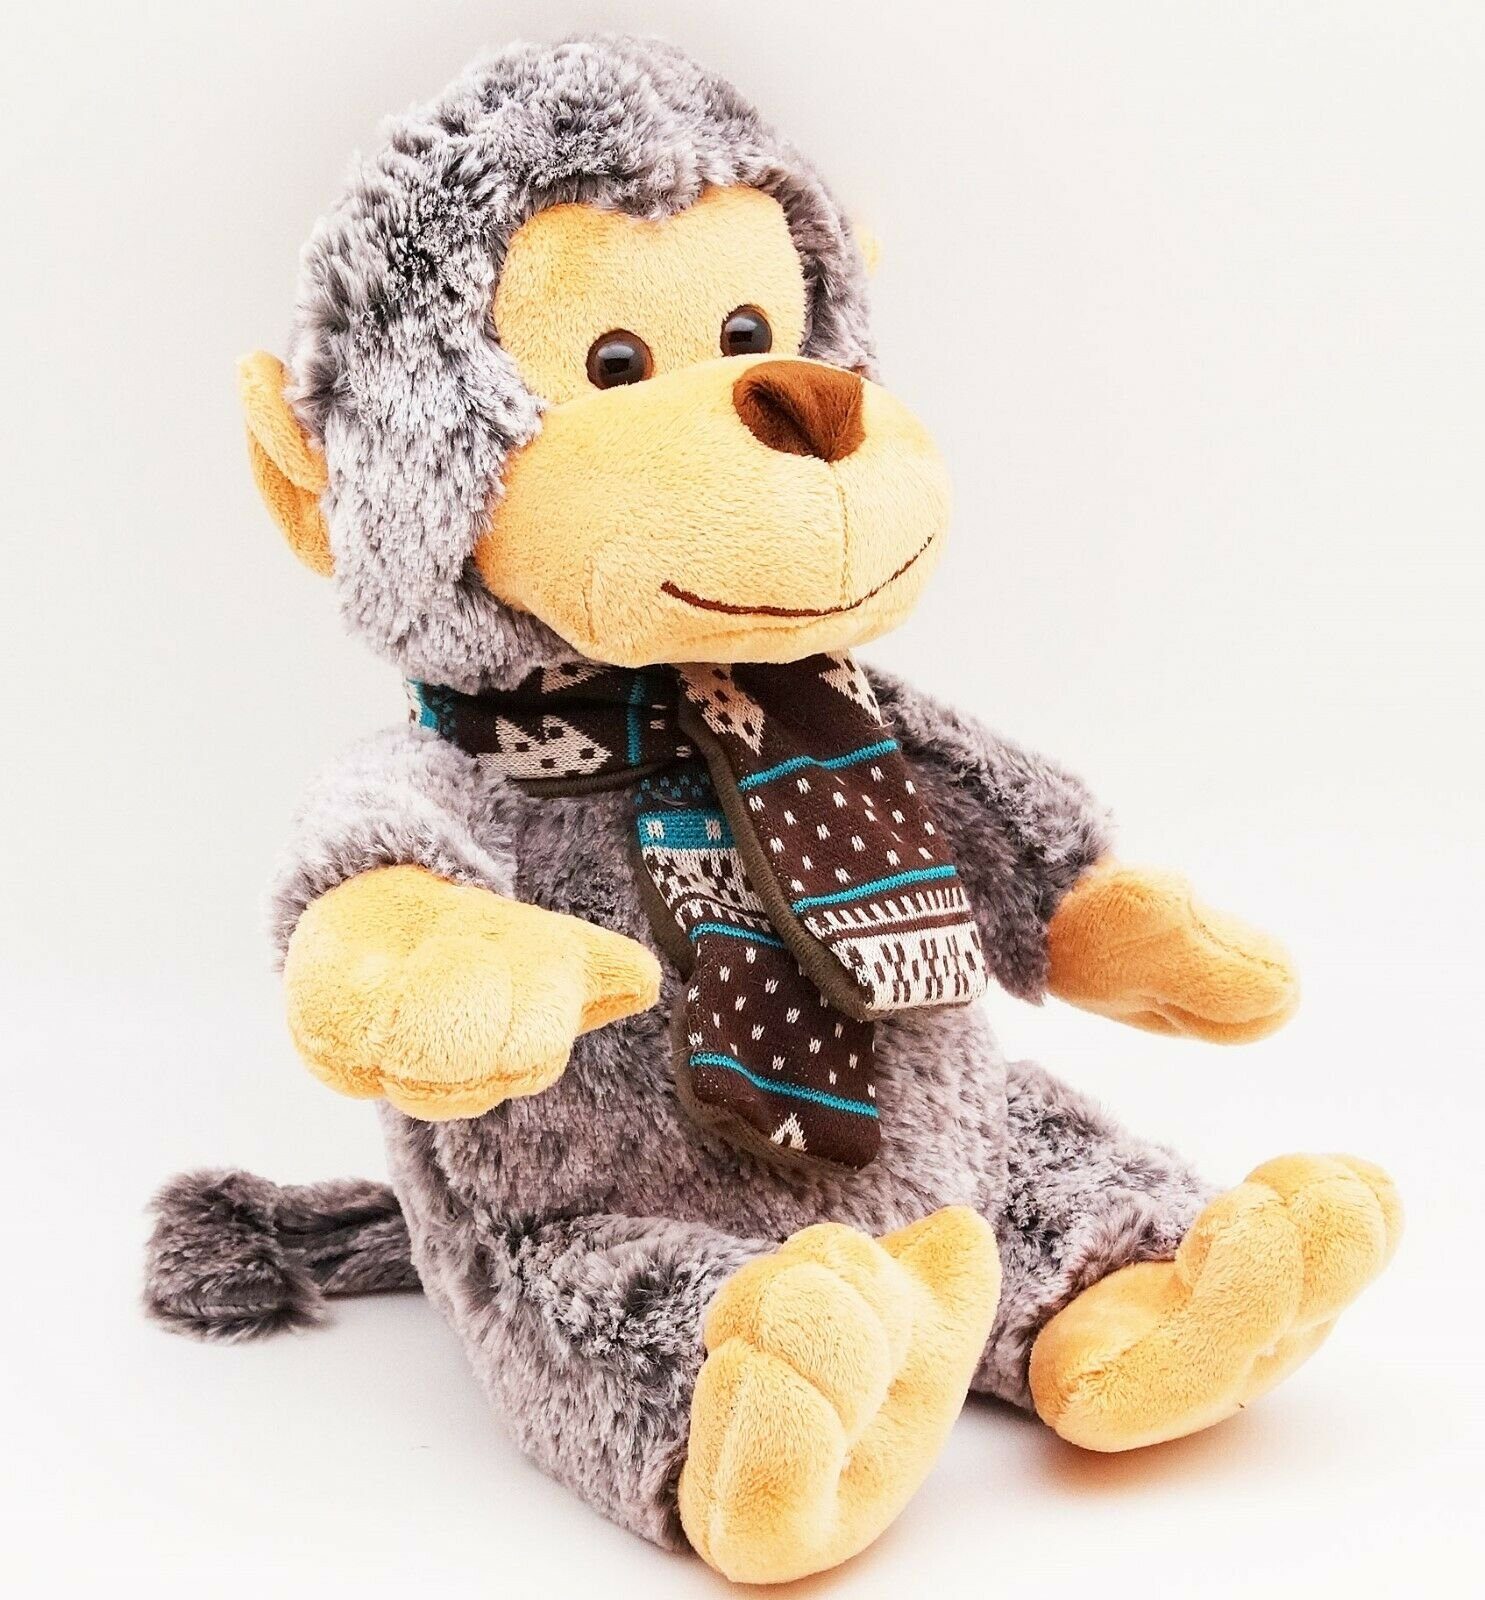 Eddy Toys Kuscheltier Kuscheltier Affe 27cm Schimpanse Stofftier Plüschtier Plüschaffe Schal